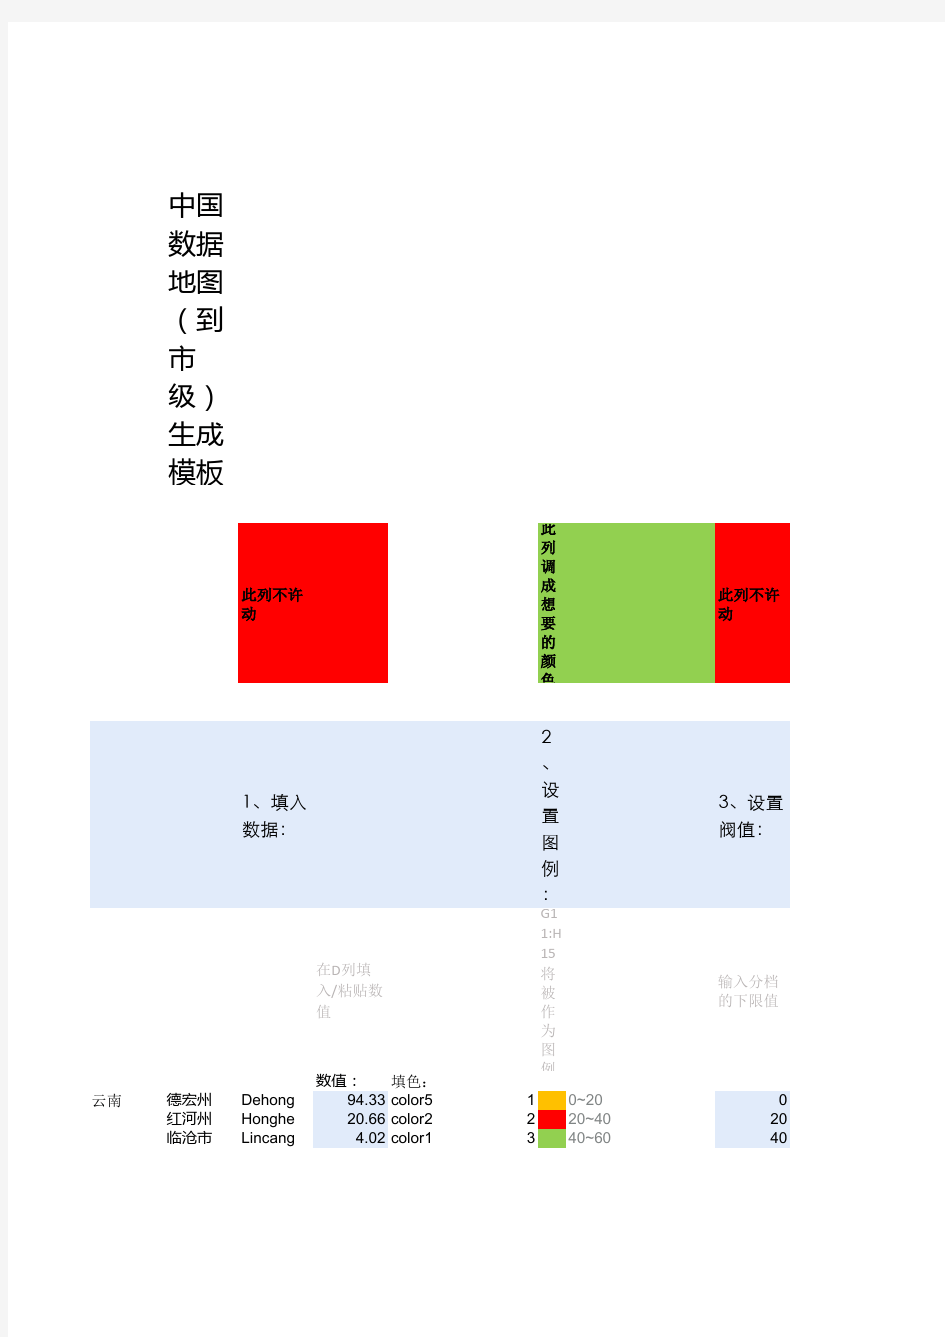 中国数据地图-到市级-分档填色(可调整成自己想要的颜色)